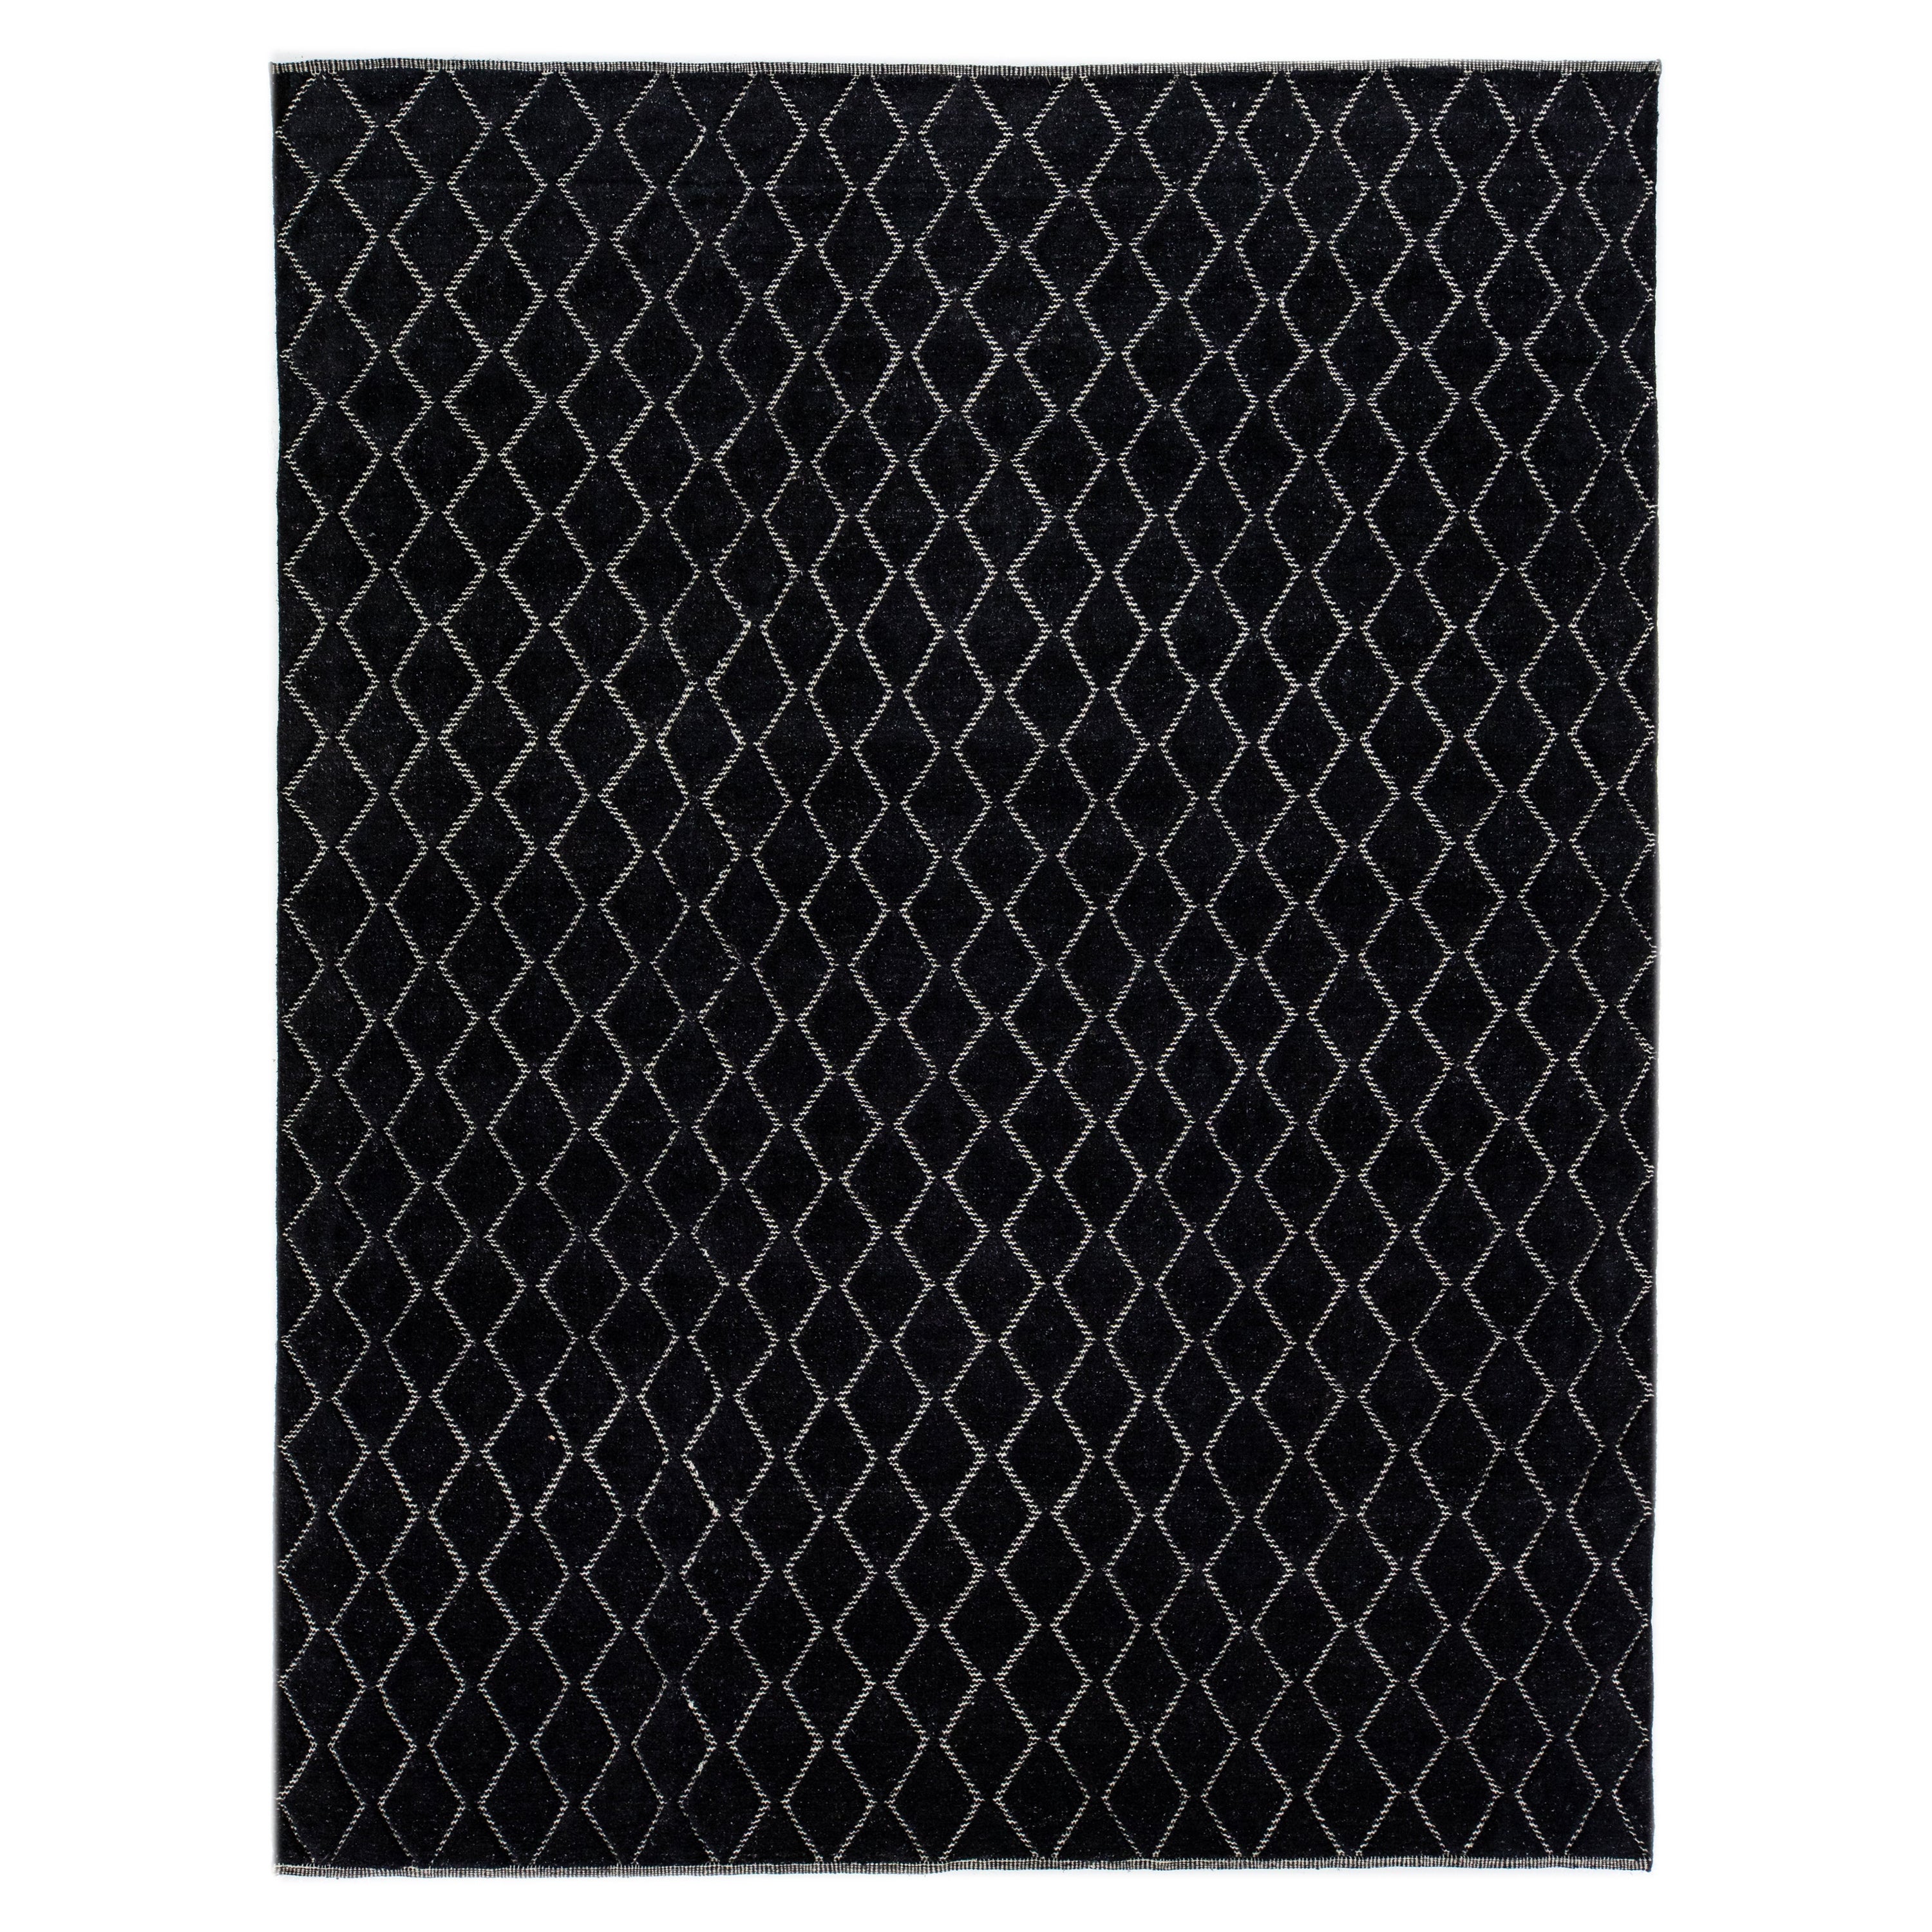 Tapis moderne en laine noire de style marocain avec motif géométrique